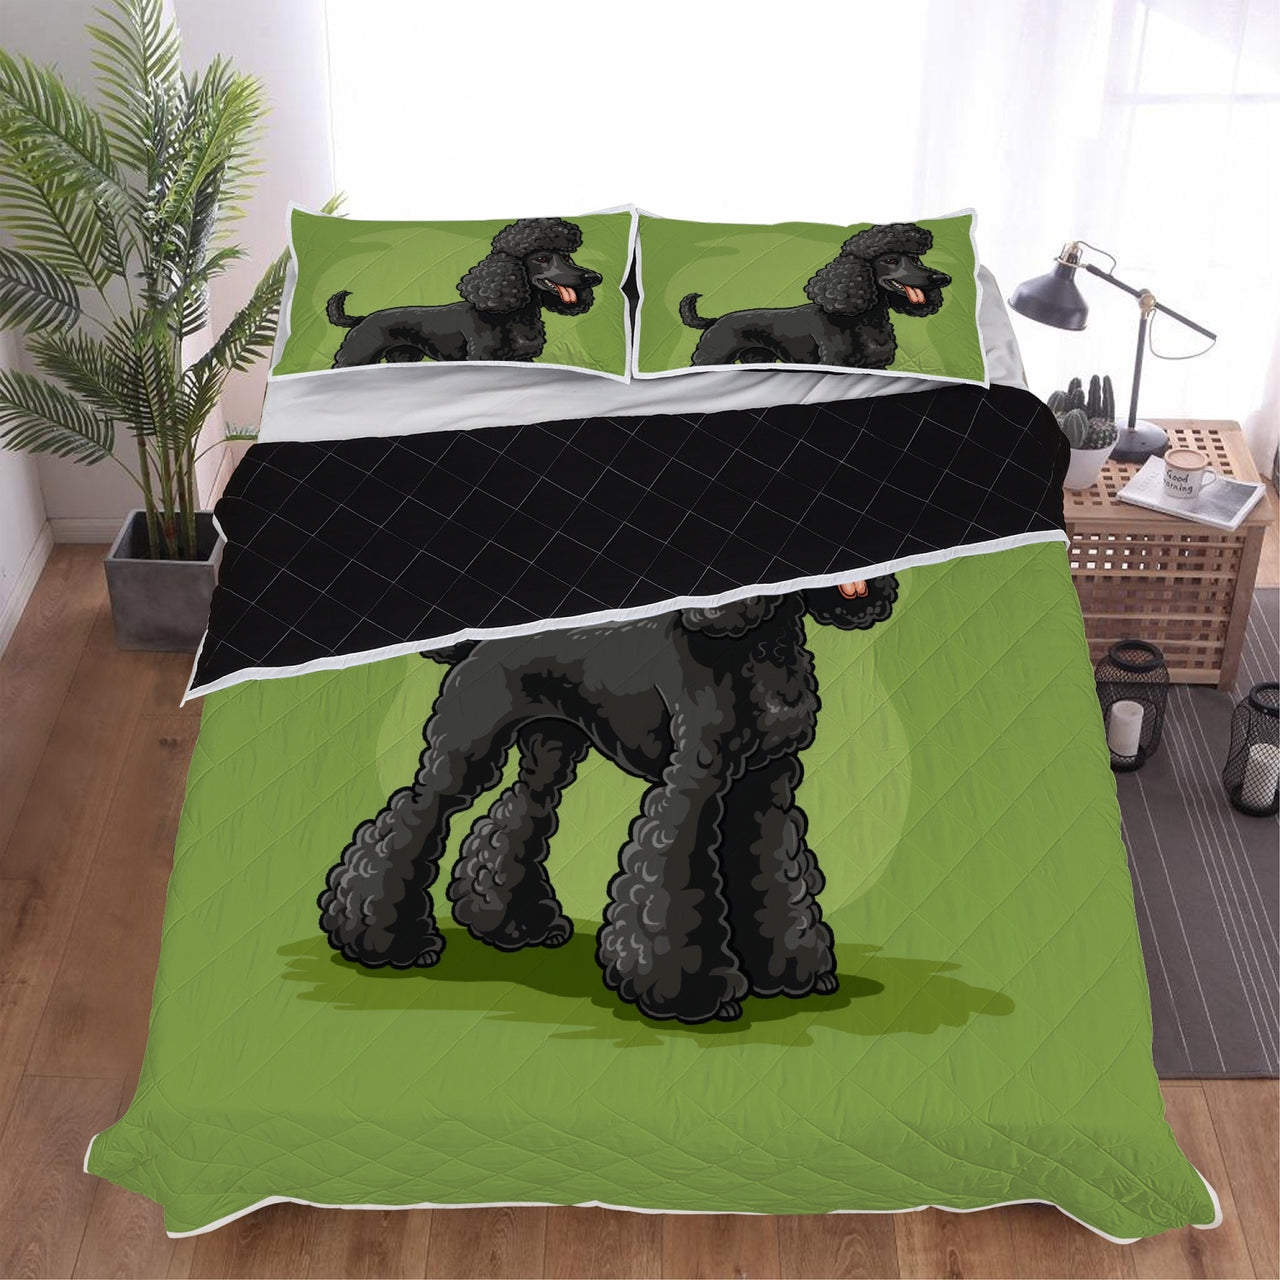 Cute Poodle Bed Set